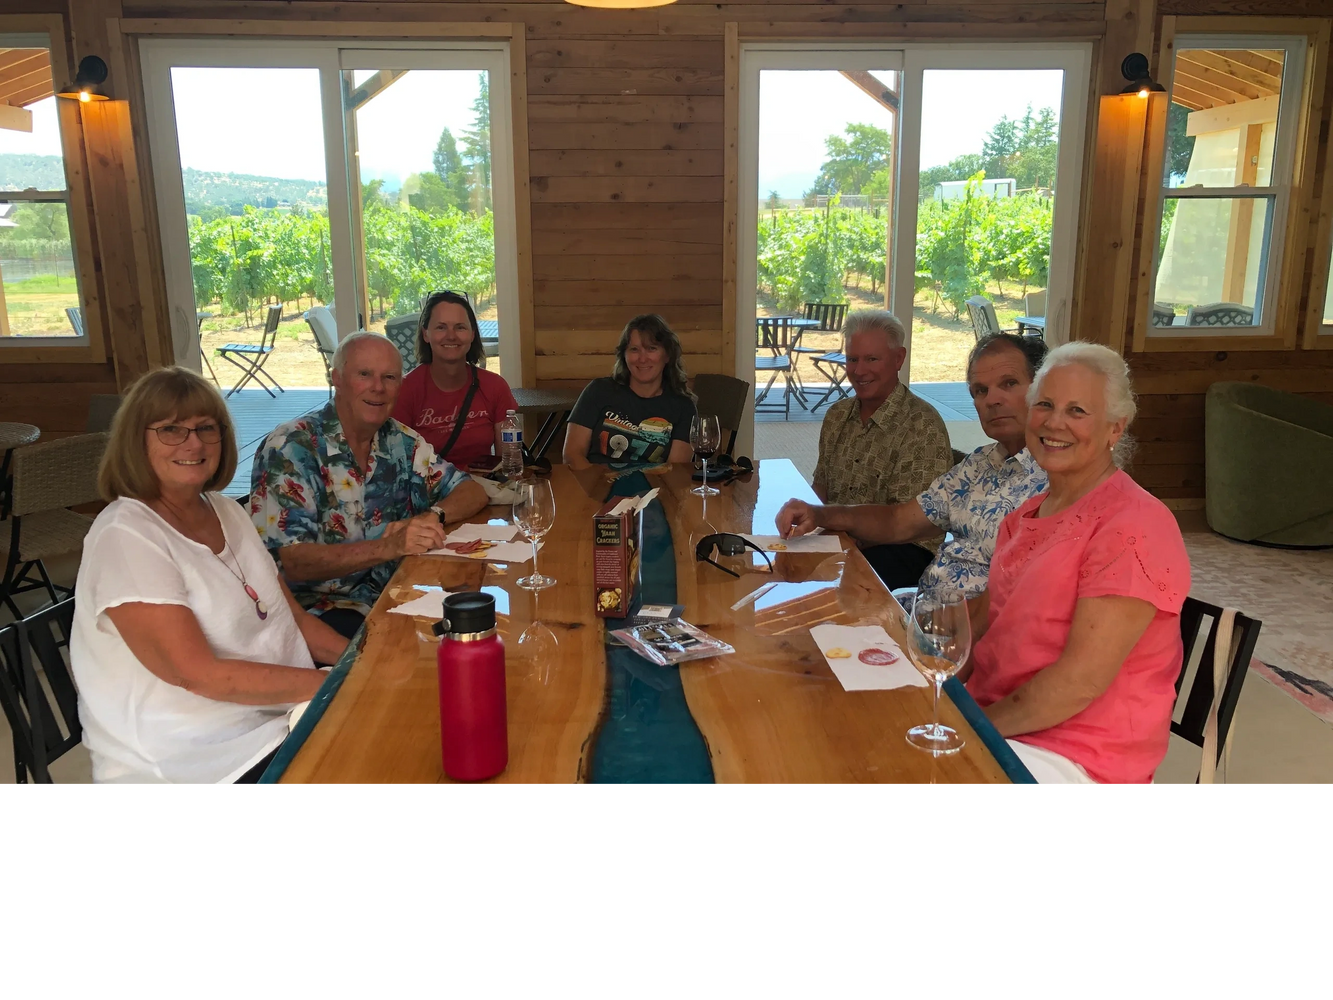 Recent wine tour in Medford